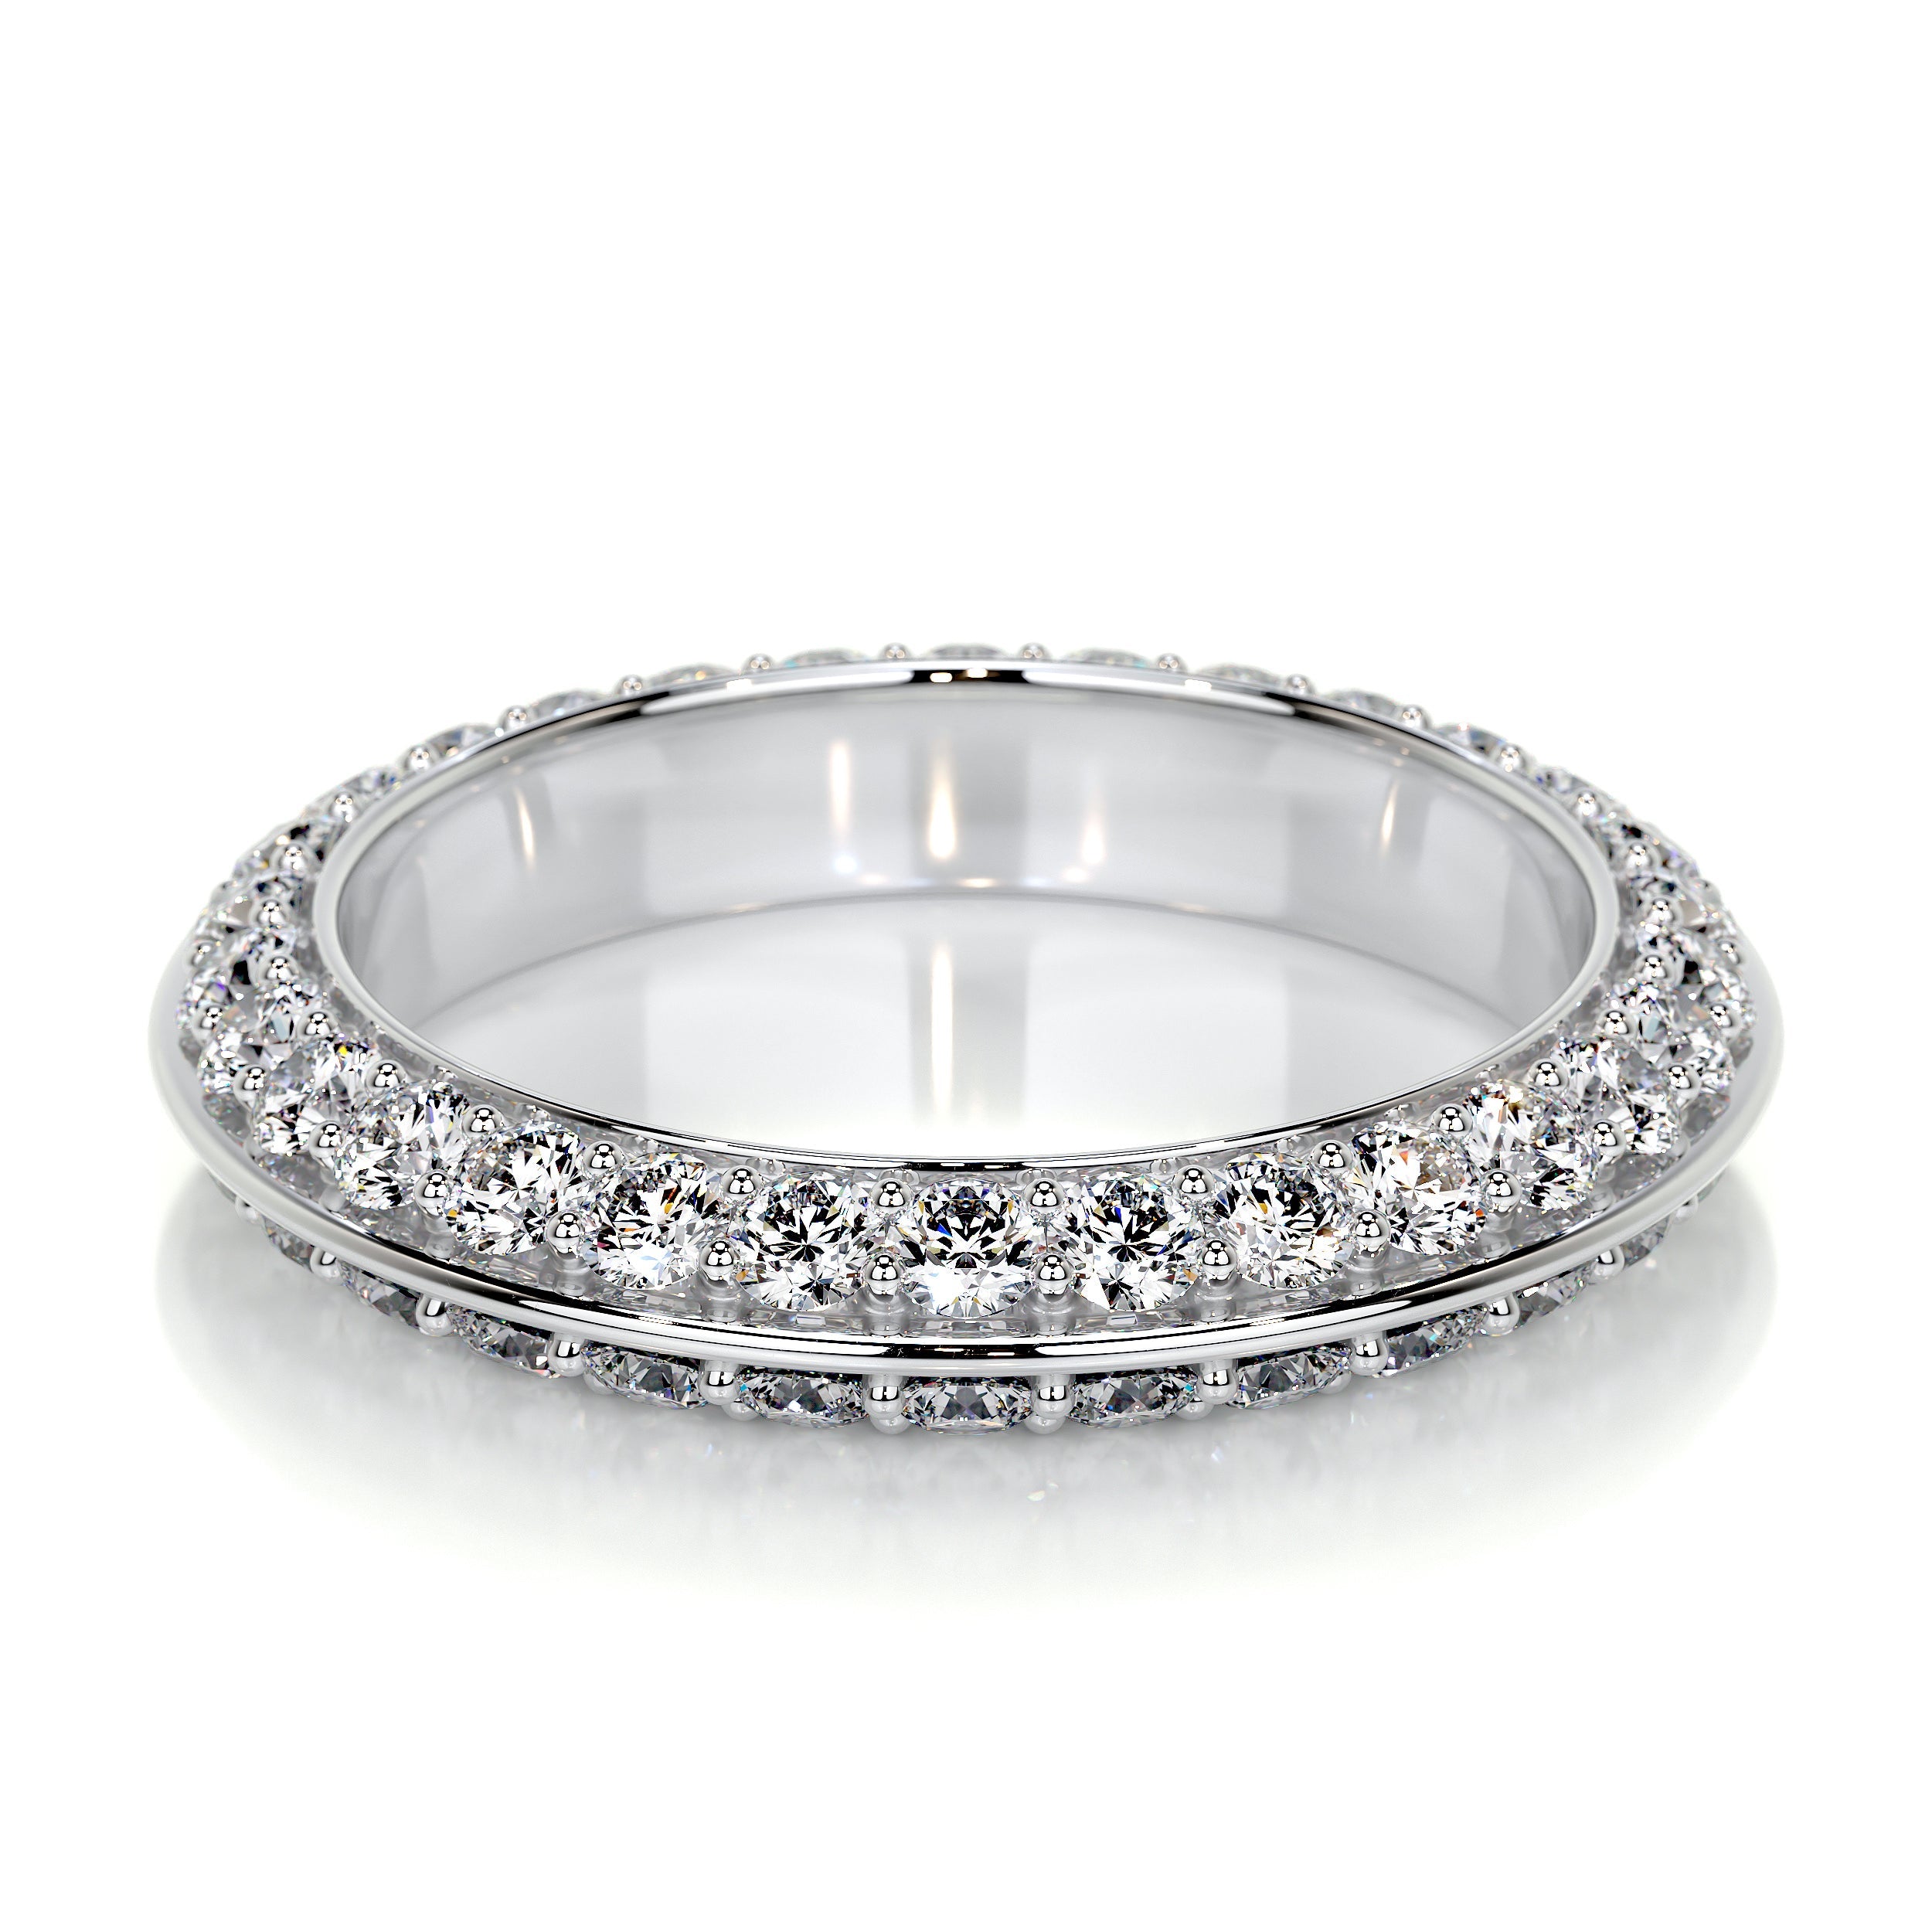 Eliana Lab Grown Diamonds Wedding Ring   (0.50 Carat) -14K White Gold (RTS)